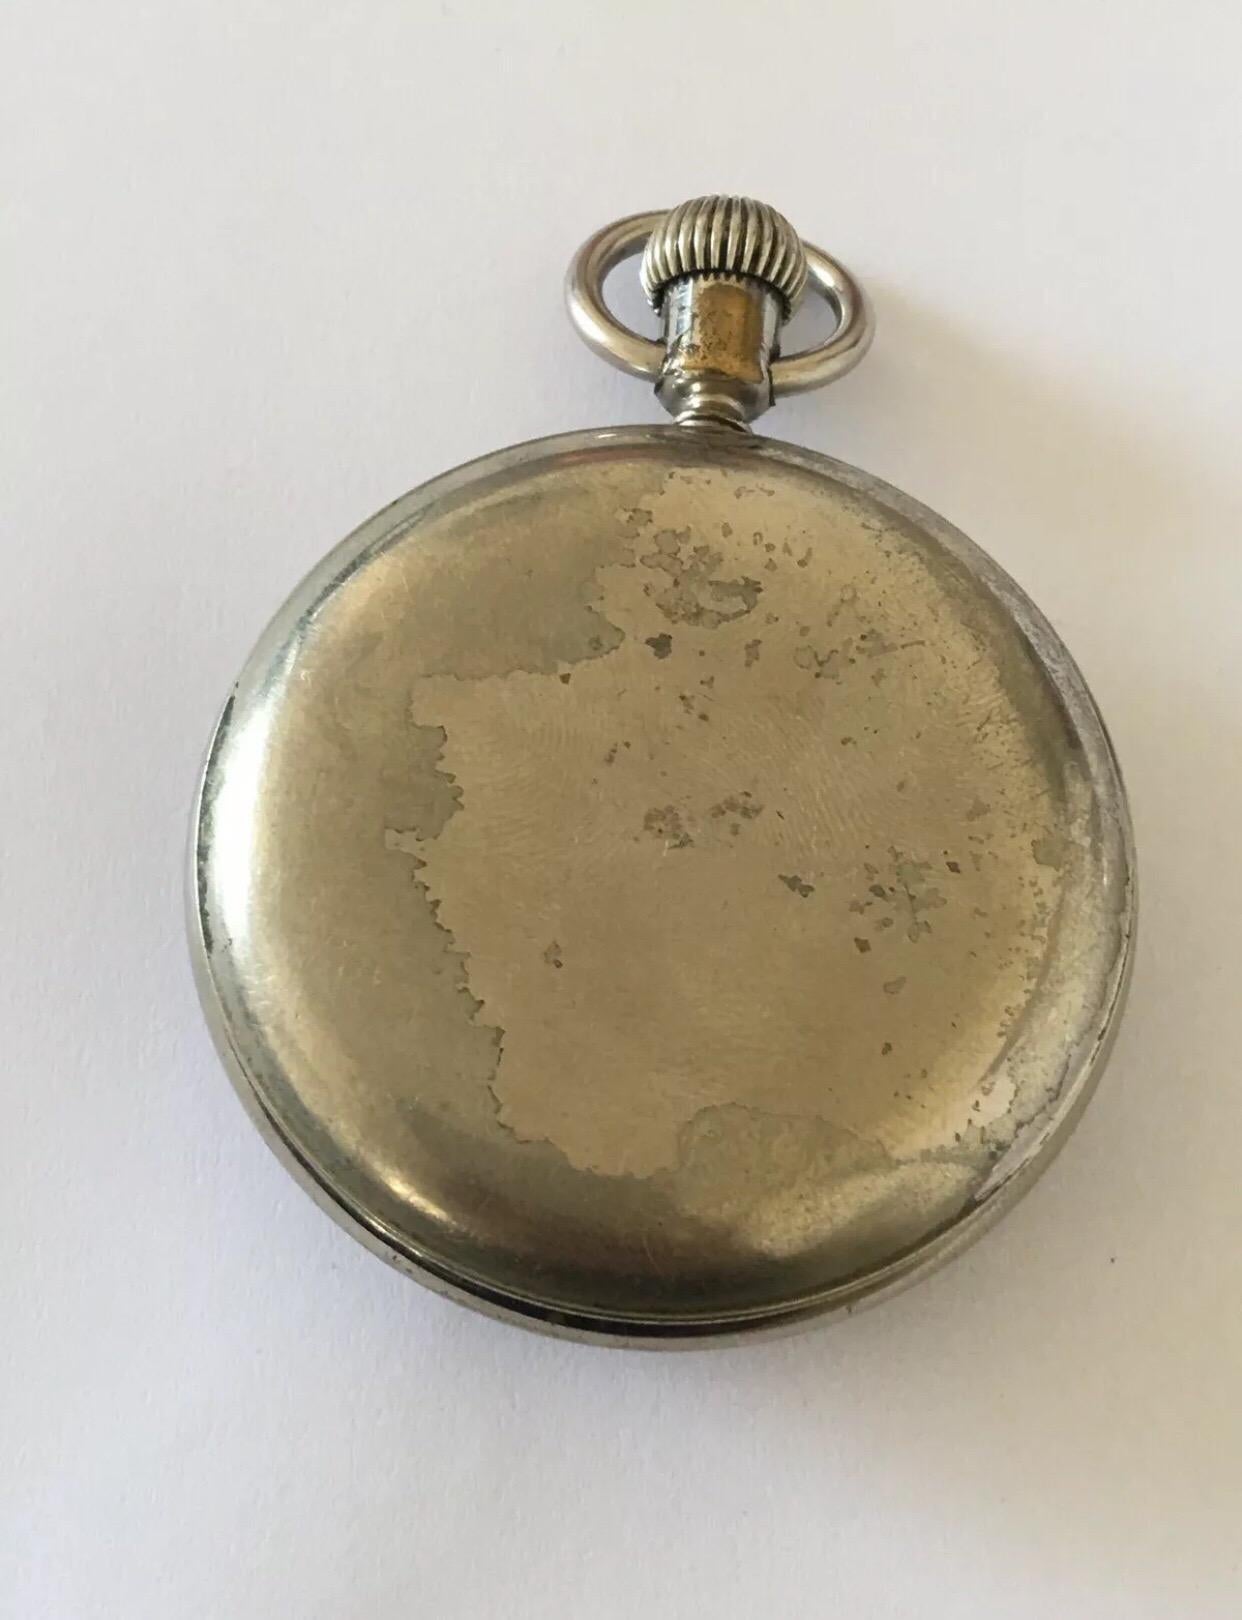 
Antike Duplex-Taschenuhr mit Hemmung Signiert The Waterbury Watch Co.


Diese Uhr funktioniert und tickt einwandfrei. In Anbetracht des Alters dieser antiken Uhr, kann ich nicht garantieren, dass die Zeitmessung genau ist. Die hintere Abdeckung ist